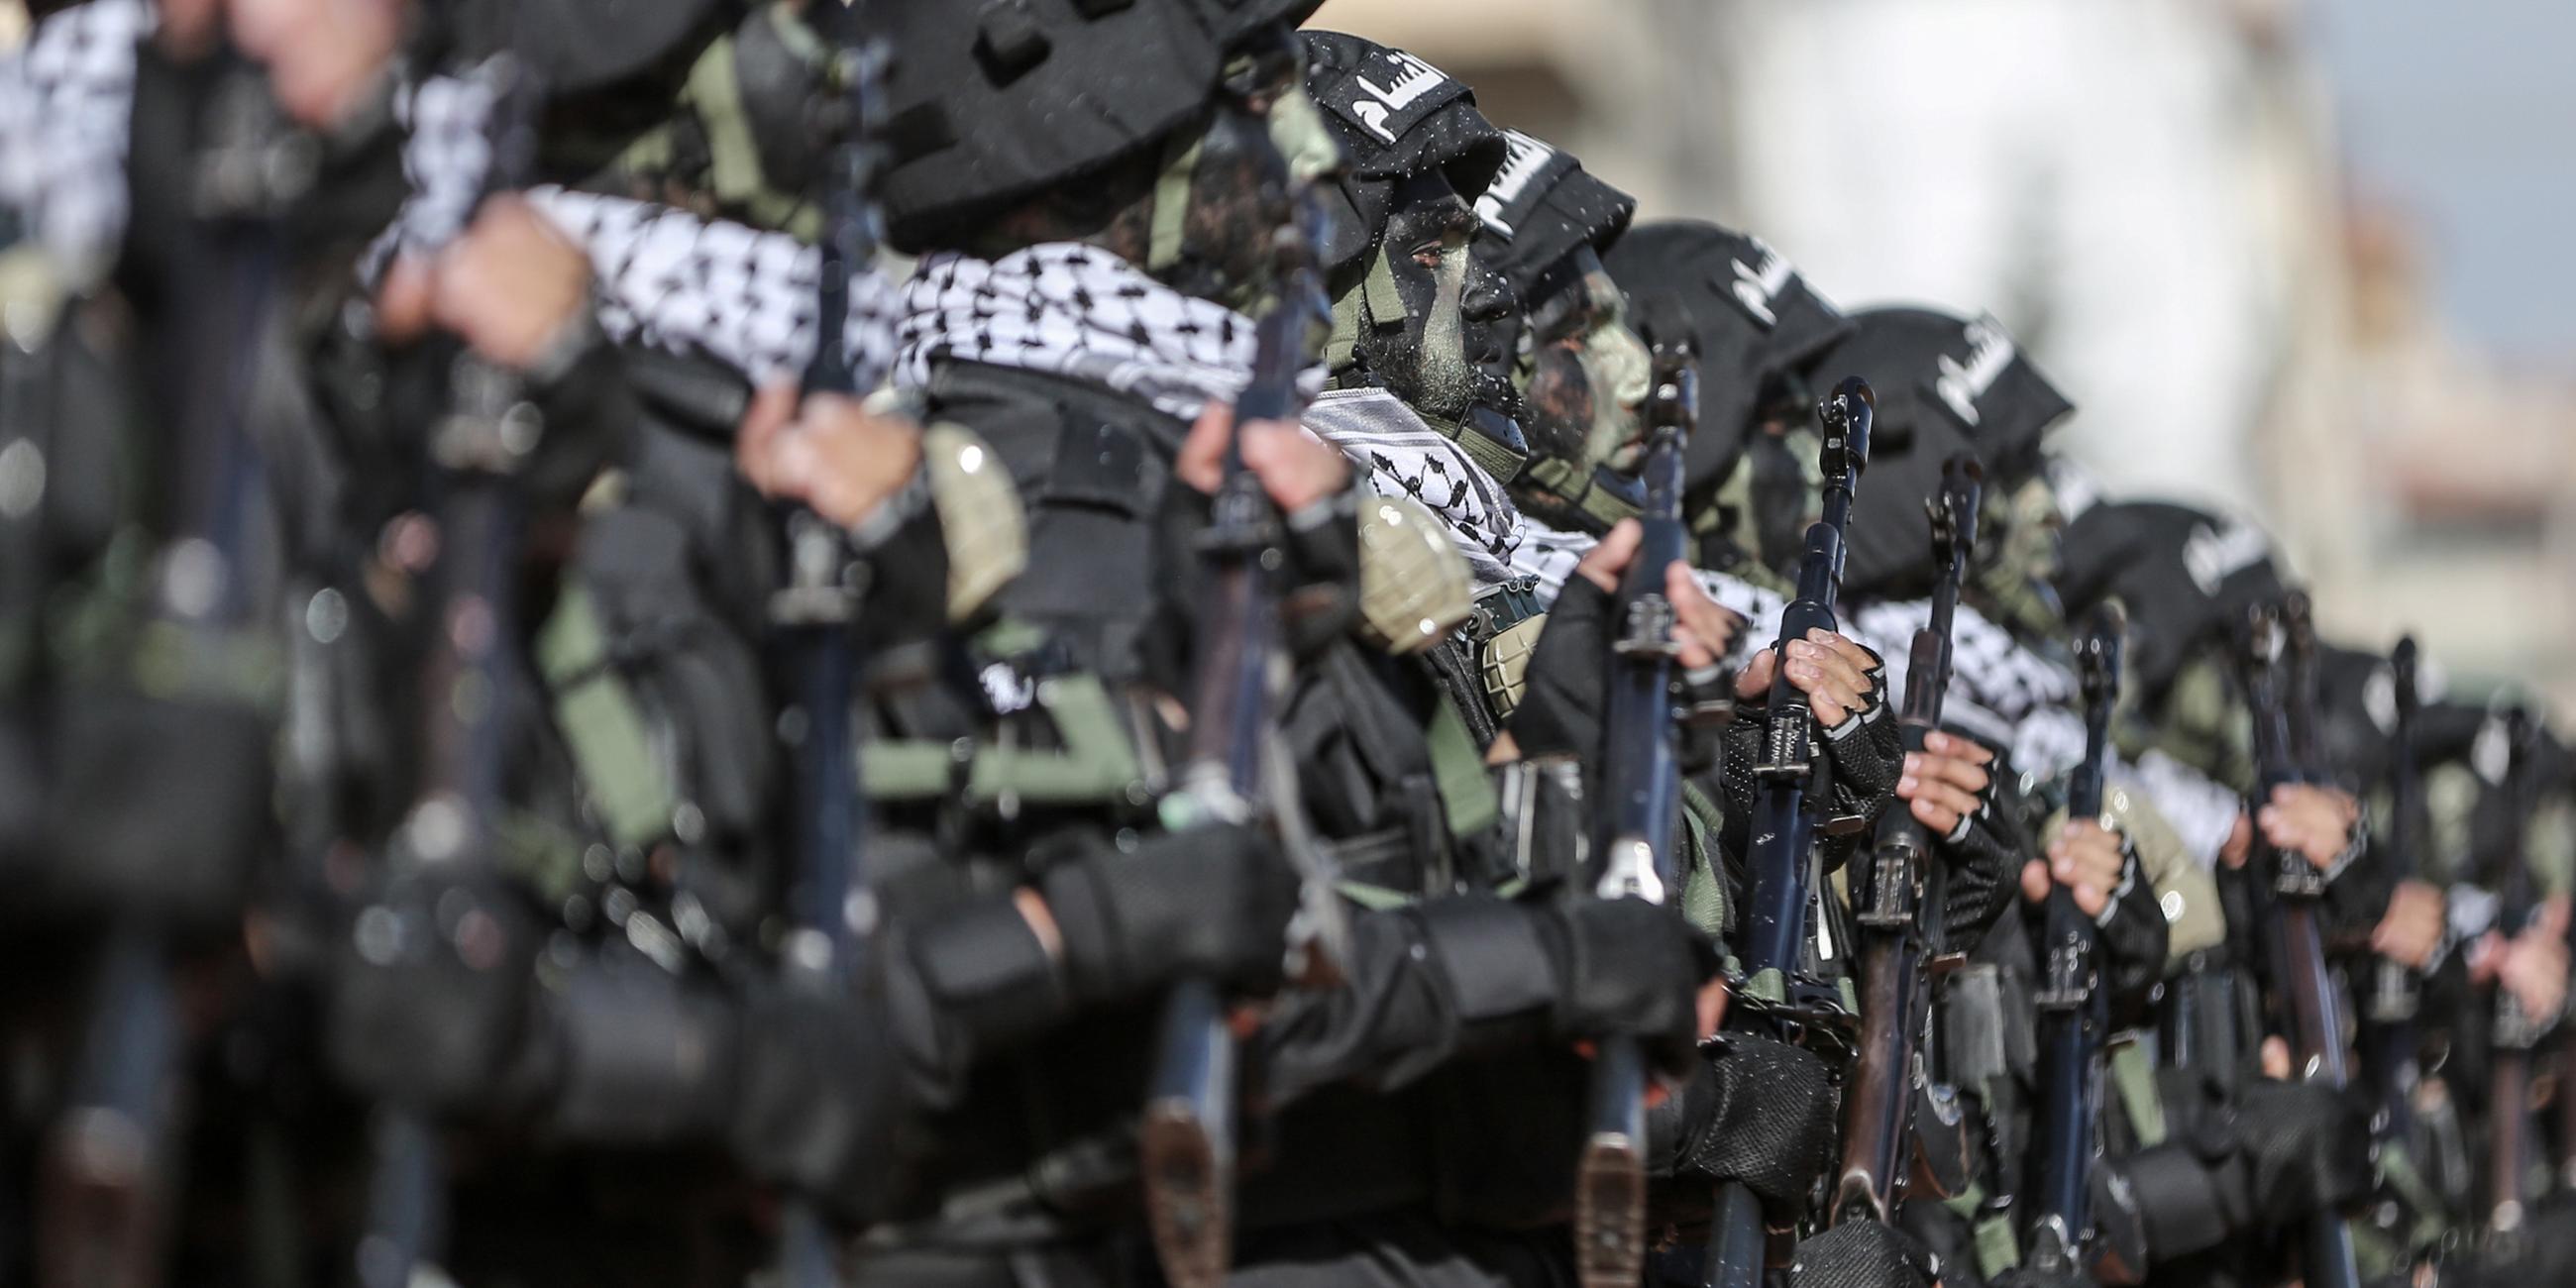 Archiv: Mitglieder der Izz ad-Din al-Qassam-Brigaden, dem bewaffneten Flügel der palästinensischen Gruppe Hamas